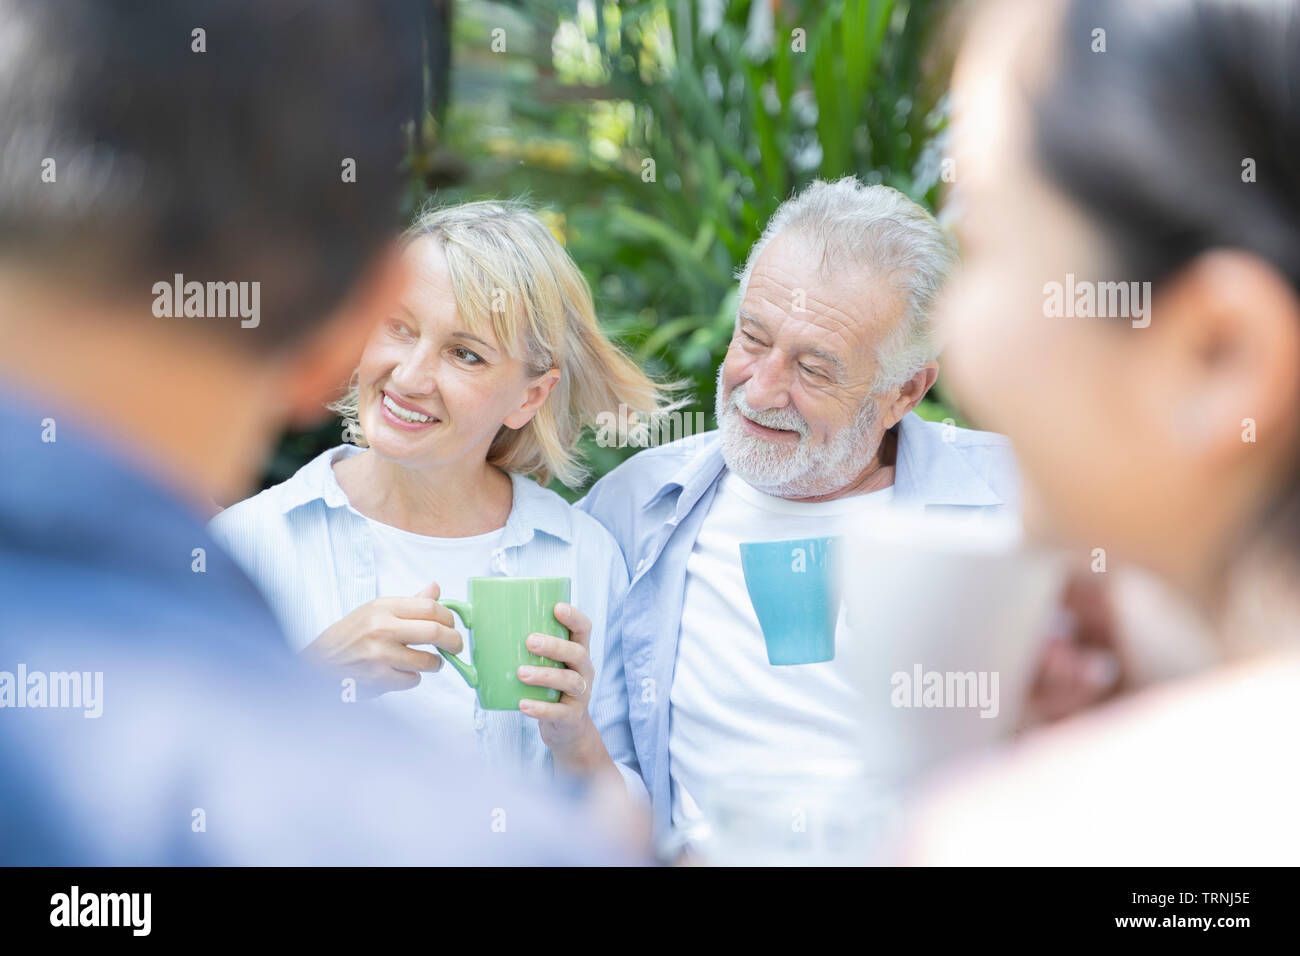 Glückliche Momente. Freudige Rentenalter nettes Paar in Kaffee und Lachen, während ihre Zeit zusammen genießen - Bild Stockfoto